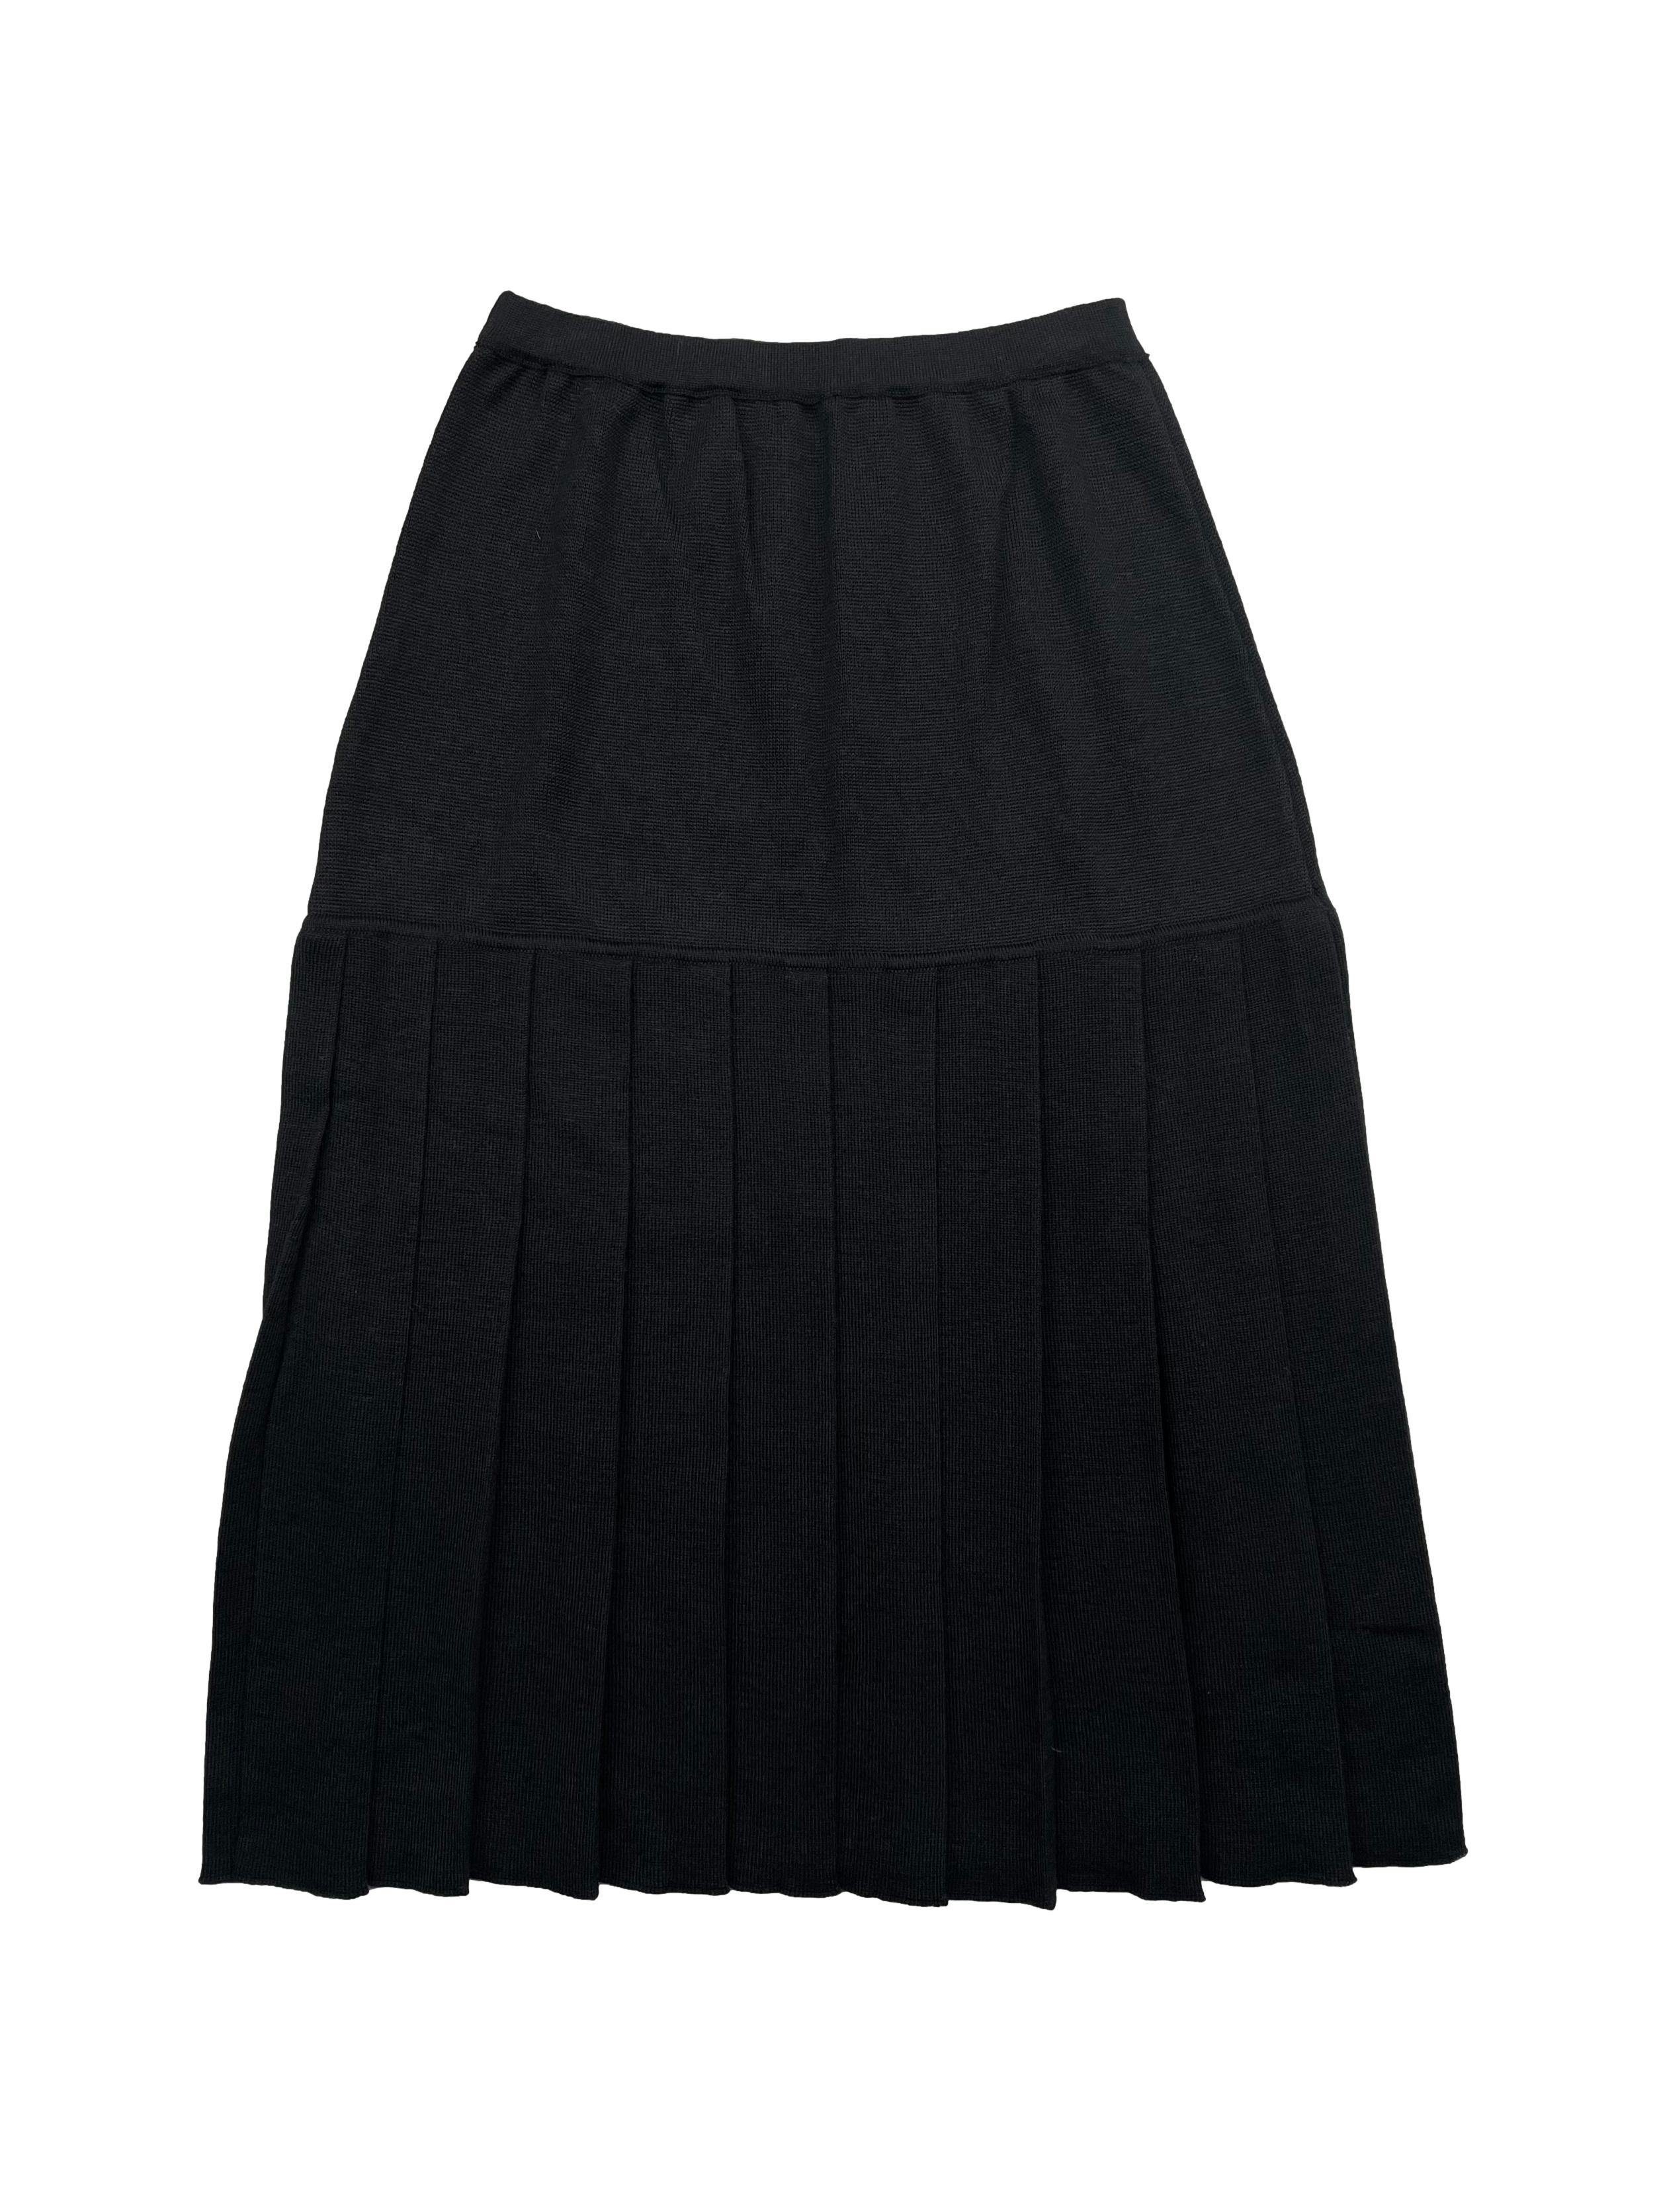 Falda vintage negra de punto , parte baja plisada con cintura elástica. Cintura 66cm sin estirar, Largo 72cm.